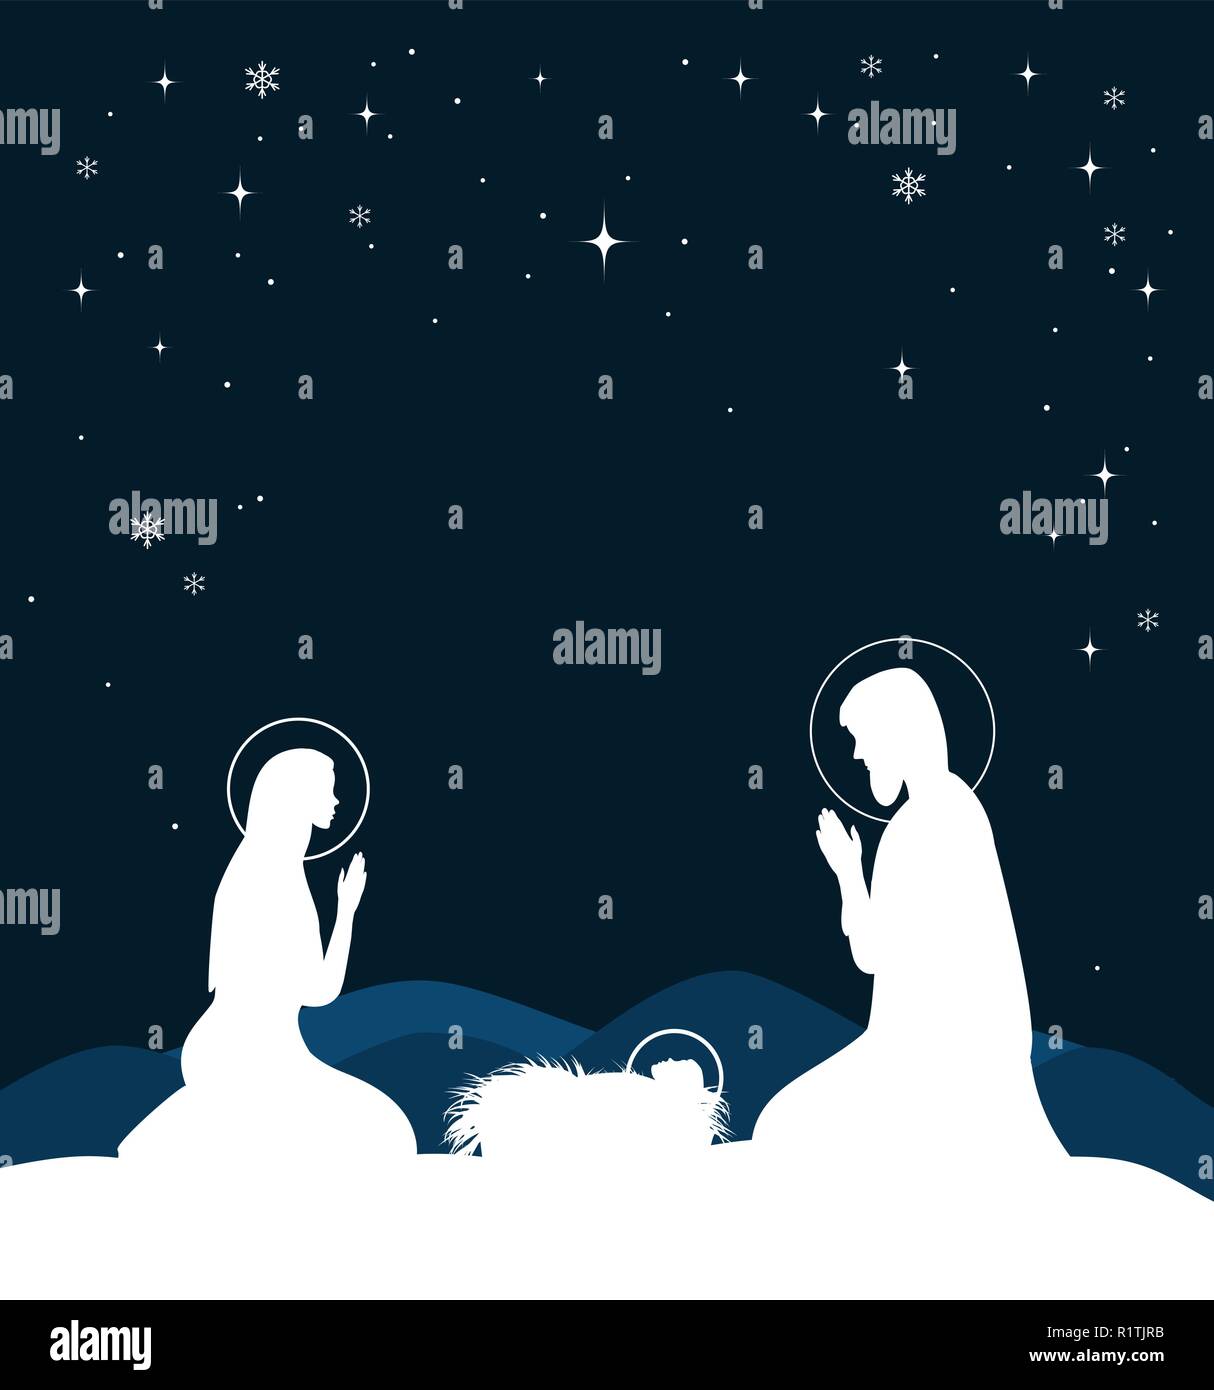 Christian Weihnachten Szene mit der Geburt von Jesus und leuchtenden Stern am blauen Himmel, Abbildung Stock Vektor